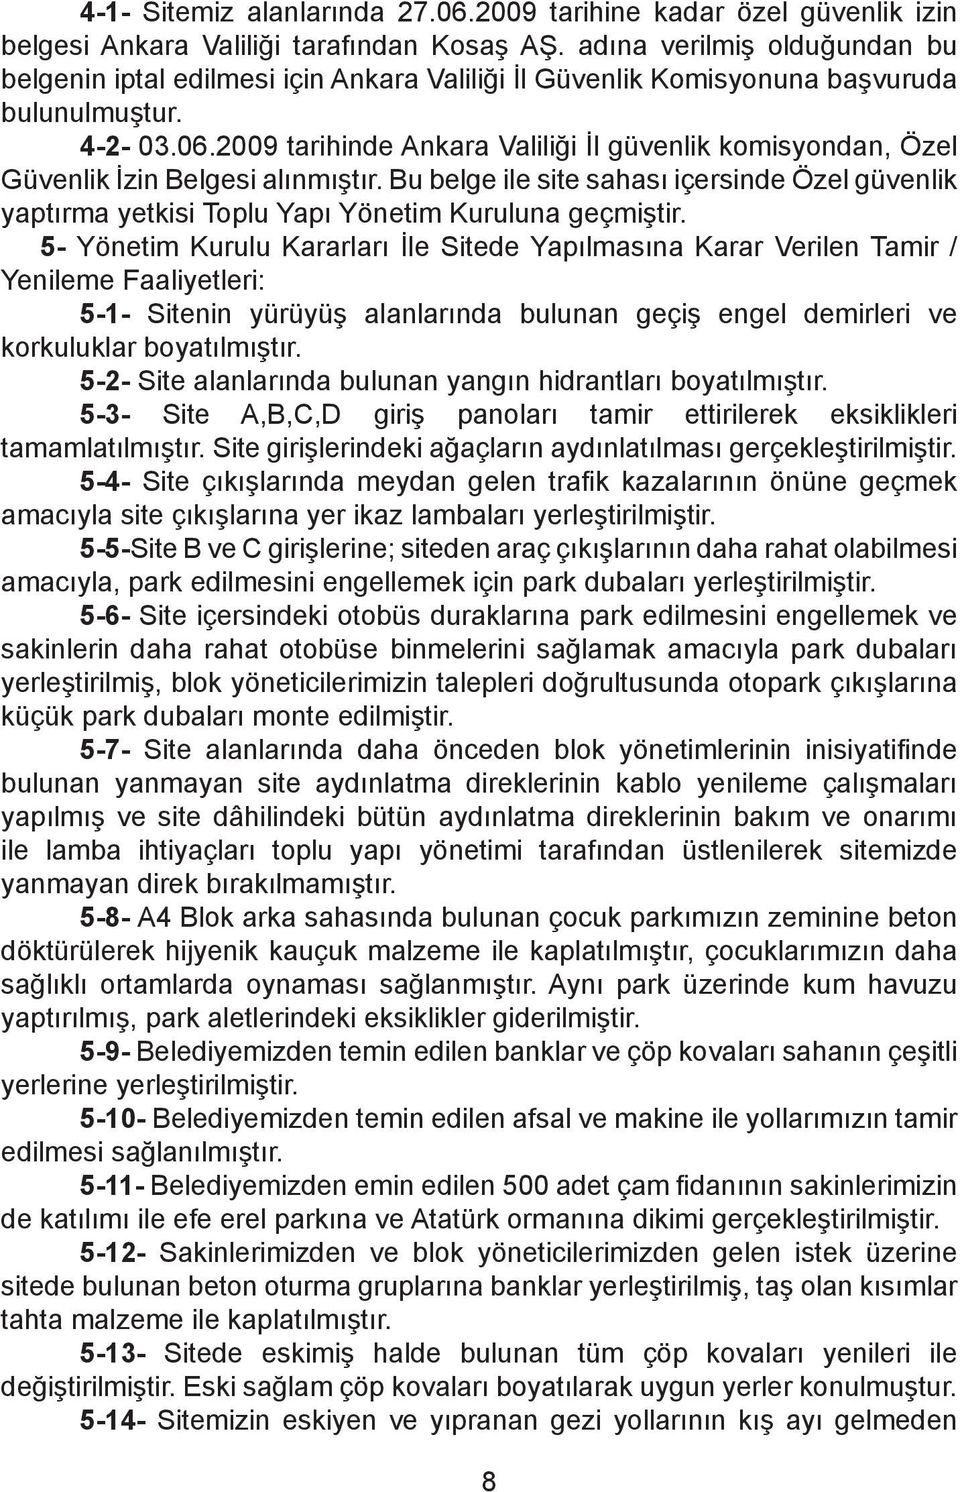 2009 tarihinde Ankara Valiliği İl güvenlik komisyondan, Özel Güvenlik İzin Belgesi alınmıştır. Bu belge ile site sahası içersinde Özel güvenlik yaptırma yetkisi Toplu Yapı Yönetim Kuruluna geçmiştir.